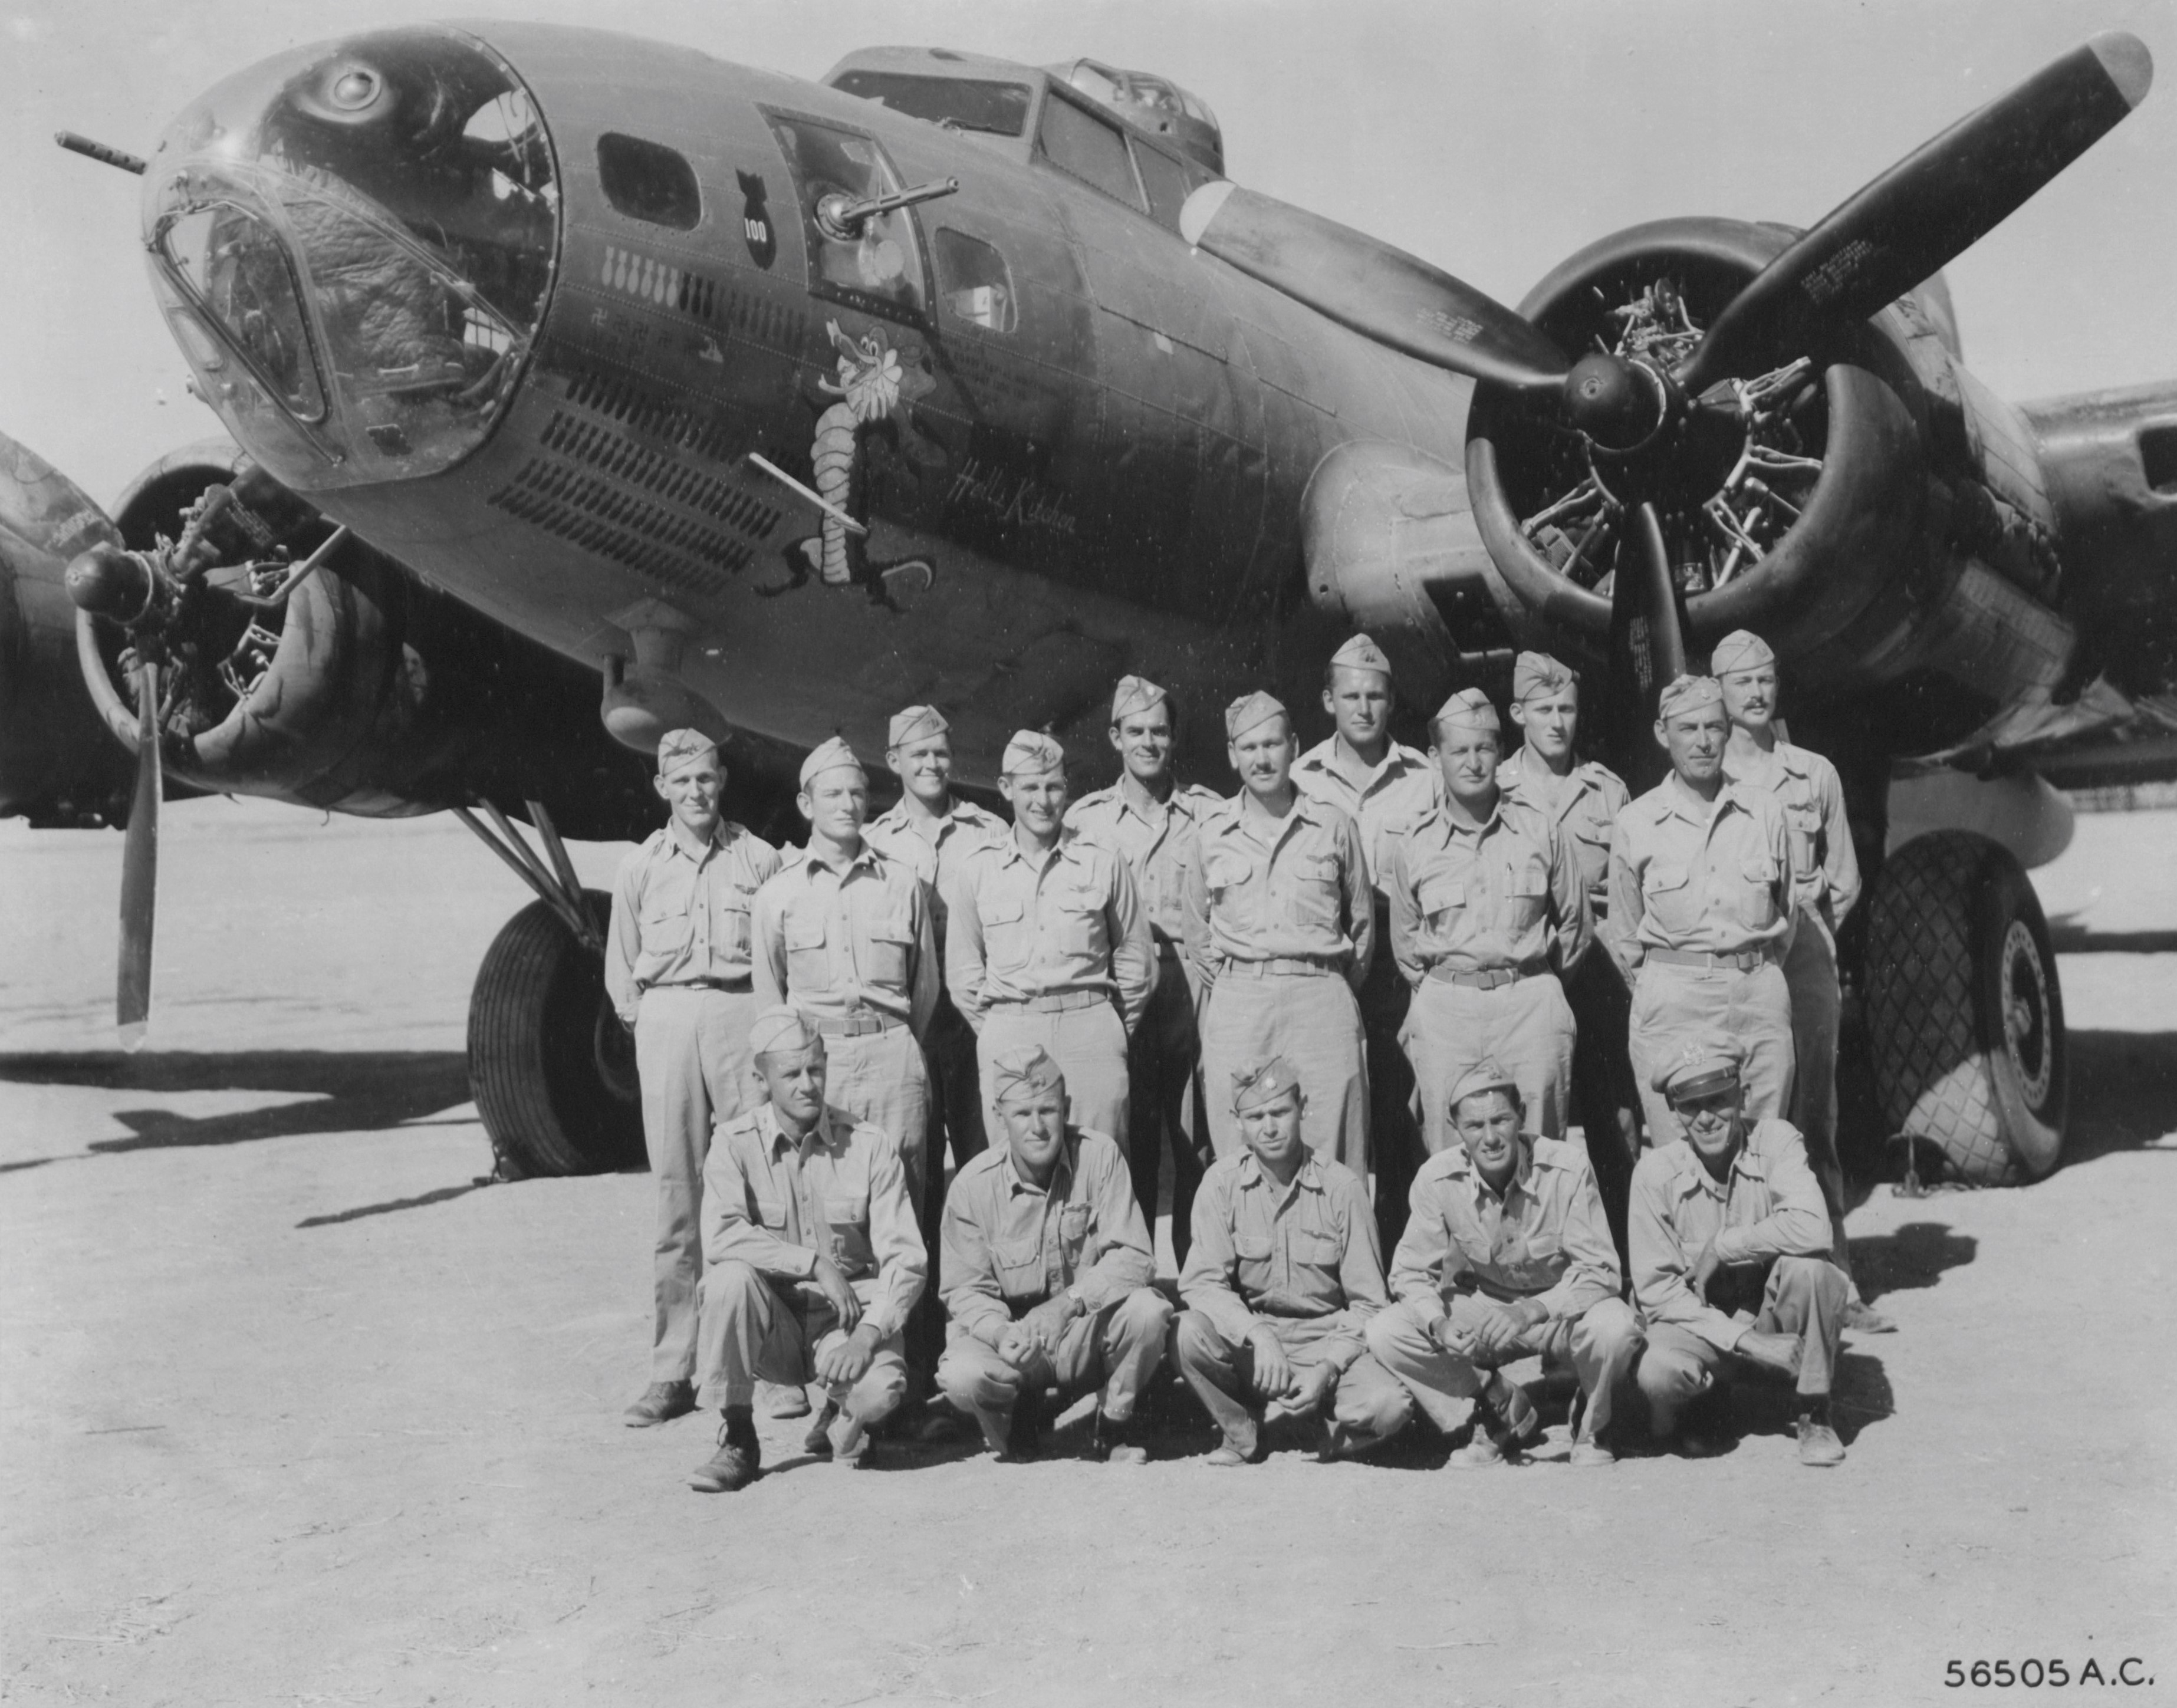 B-17 Hell's Kitchen